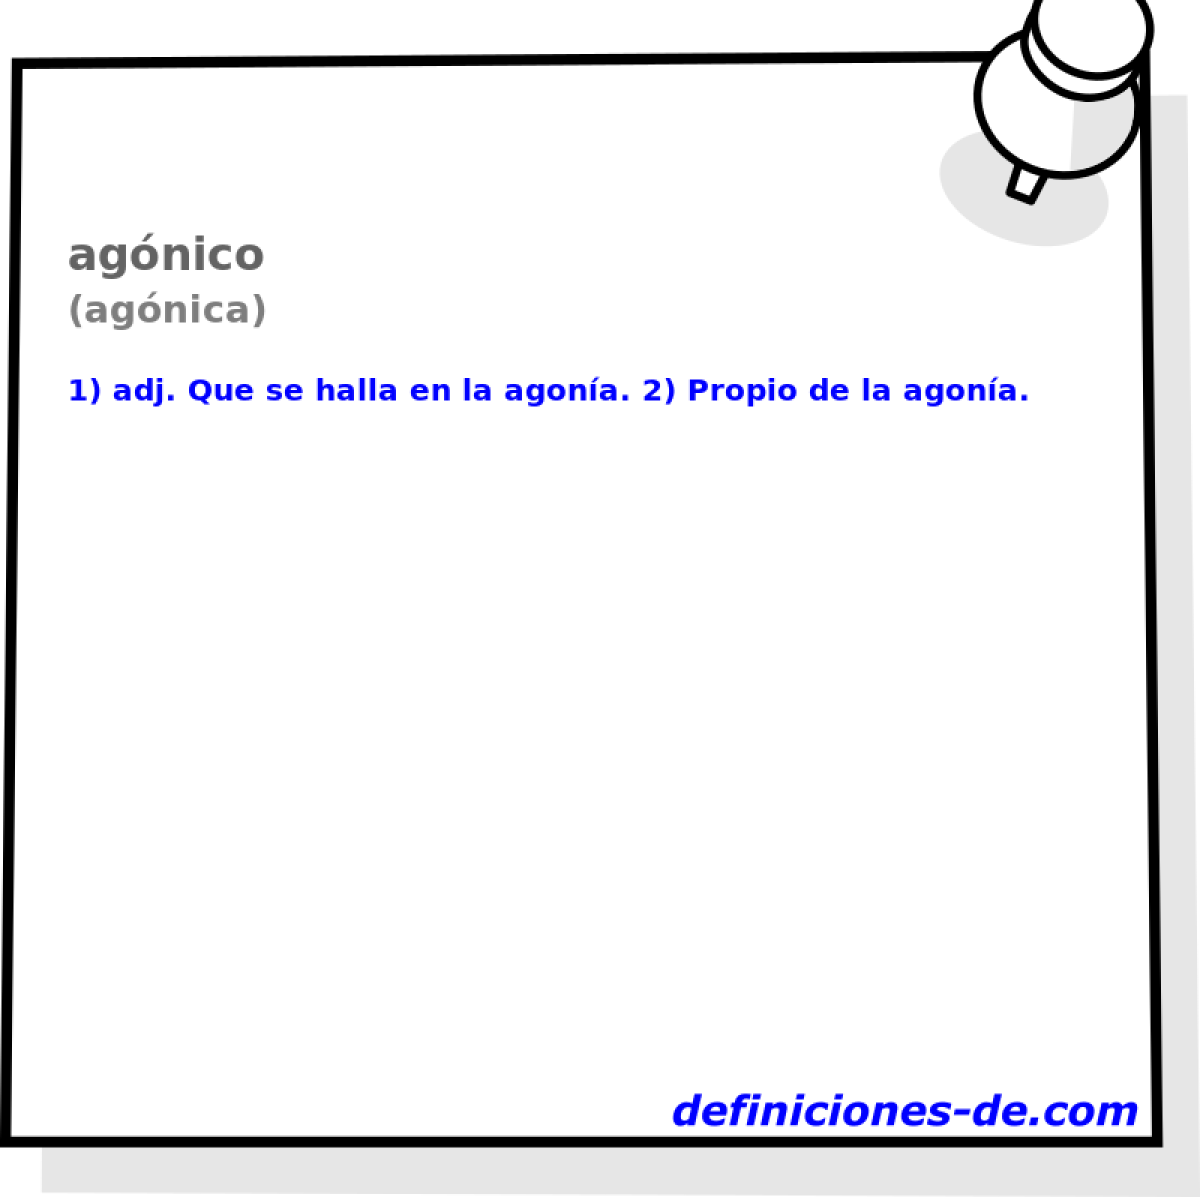 agnico (agnica)